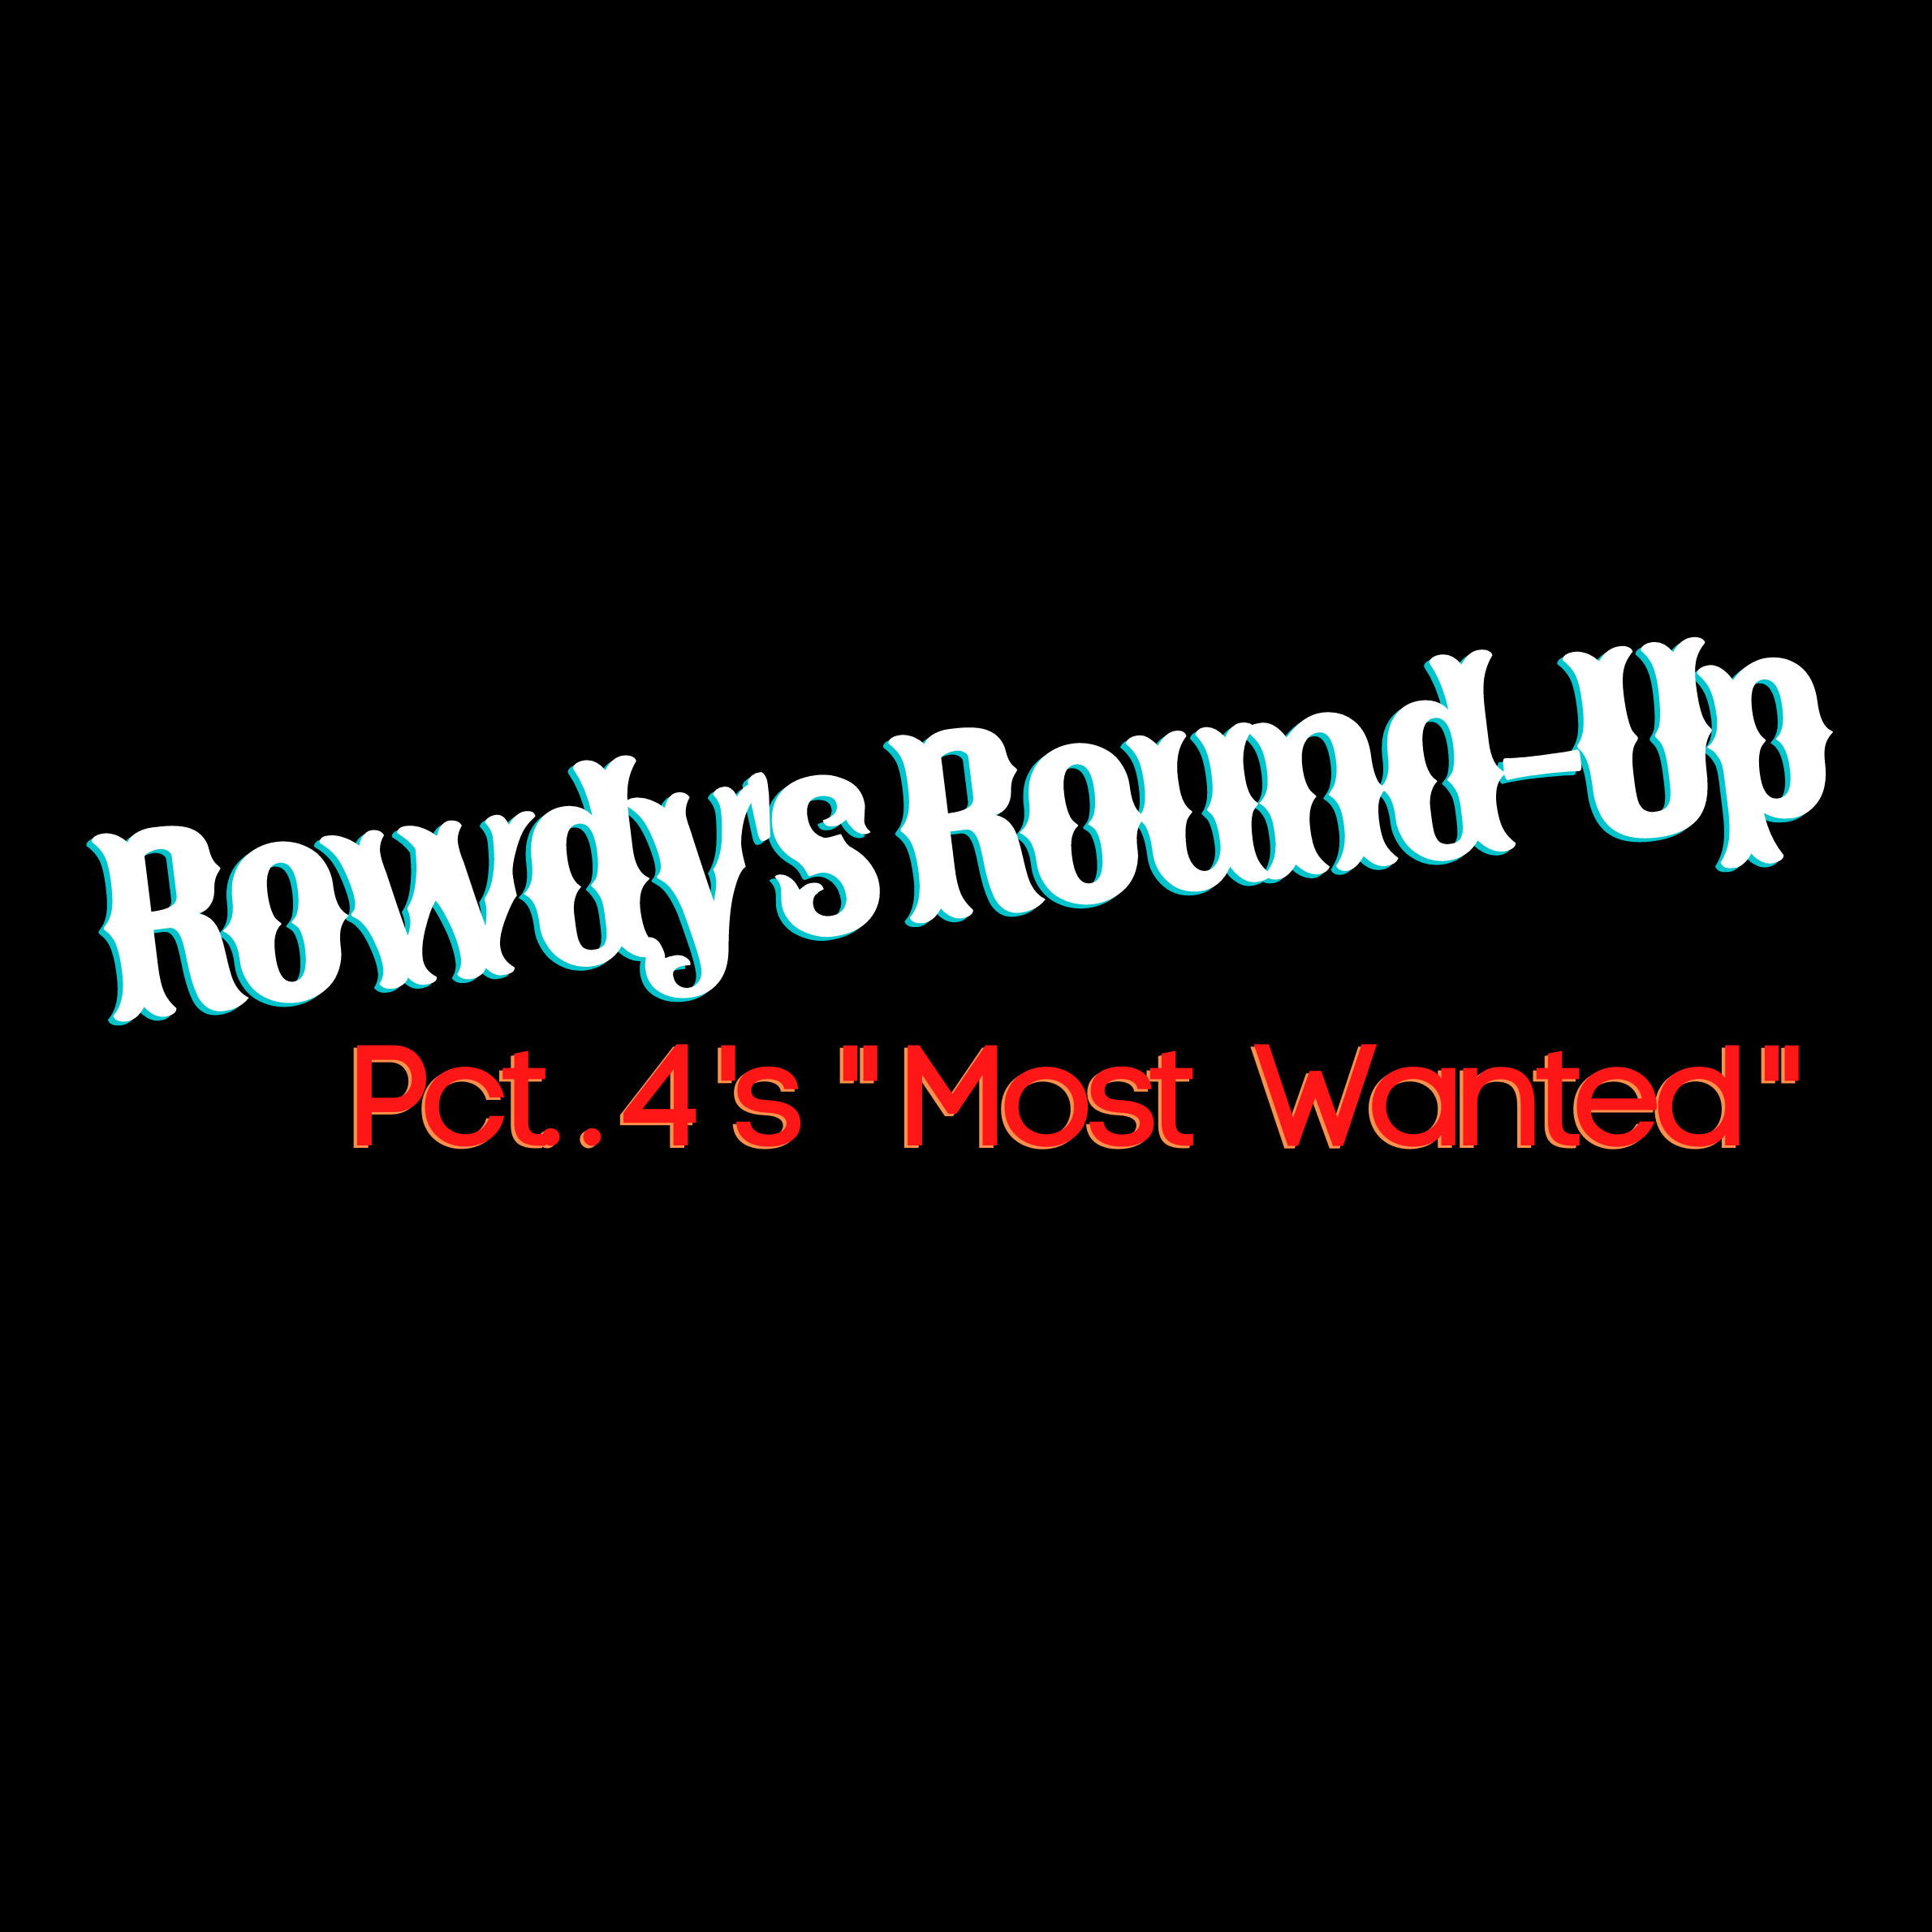 Rowdy's Round- Up